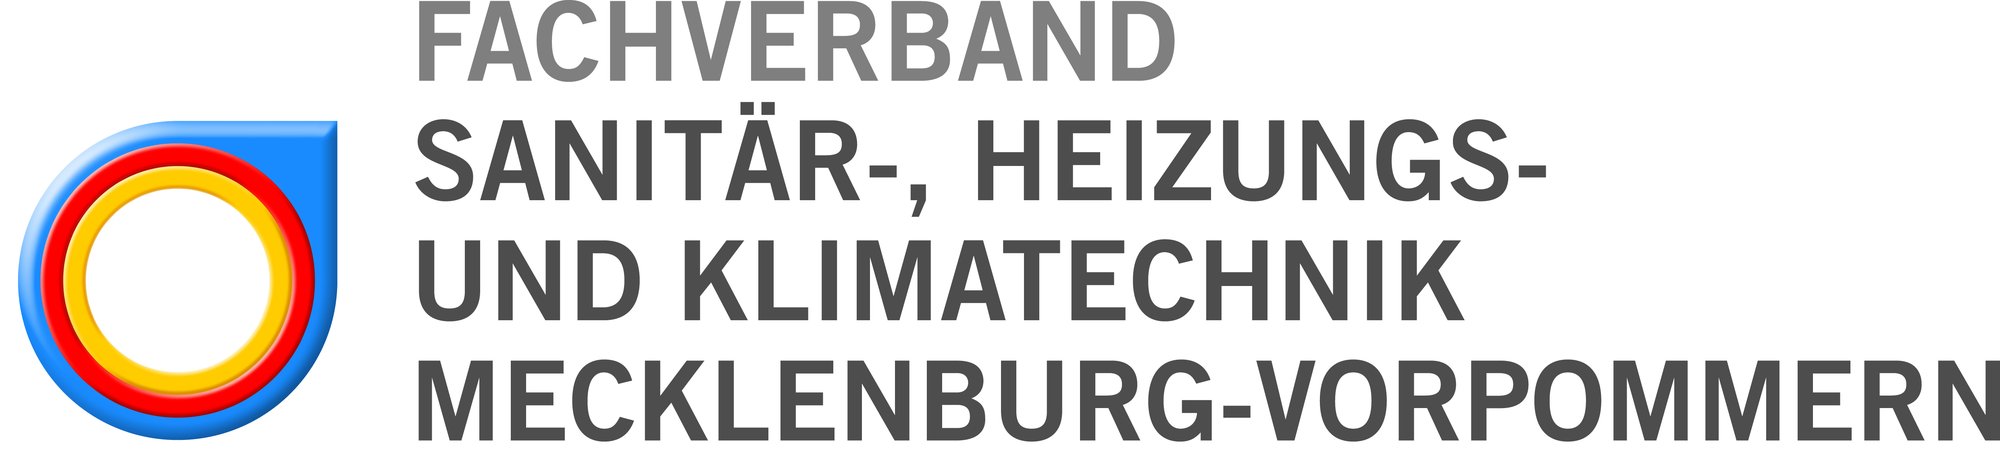 Fachverband Sanitär-, Heizungs- und Klimatechnik Mecklenburg-Vorpommern begrüßt den Bundestagsbeschluss vom 8.9.2023 zur Novellierung des Gebäudeenergiegesetzes